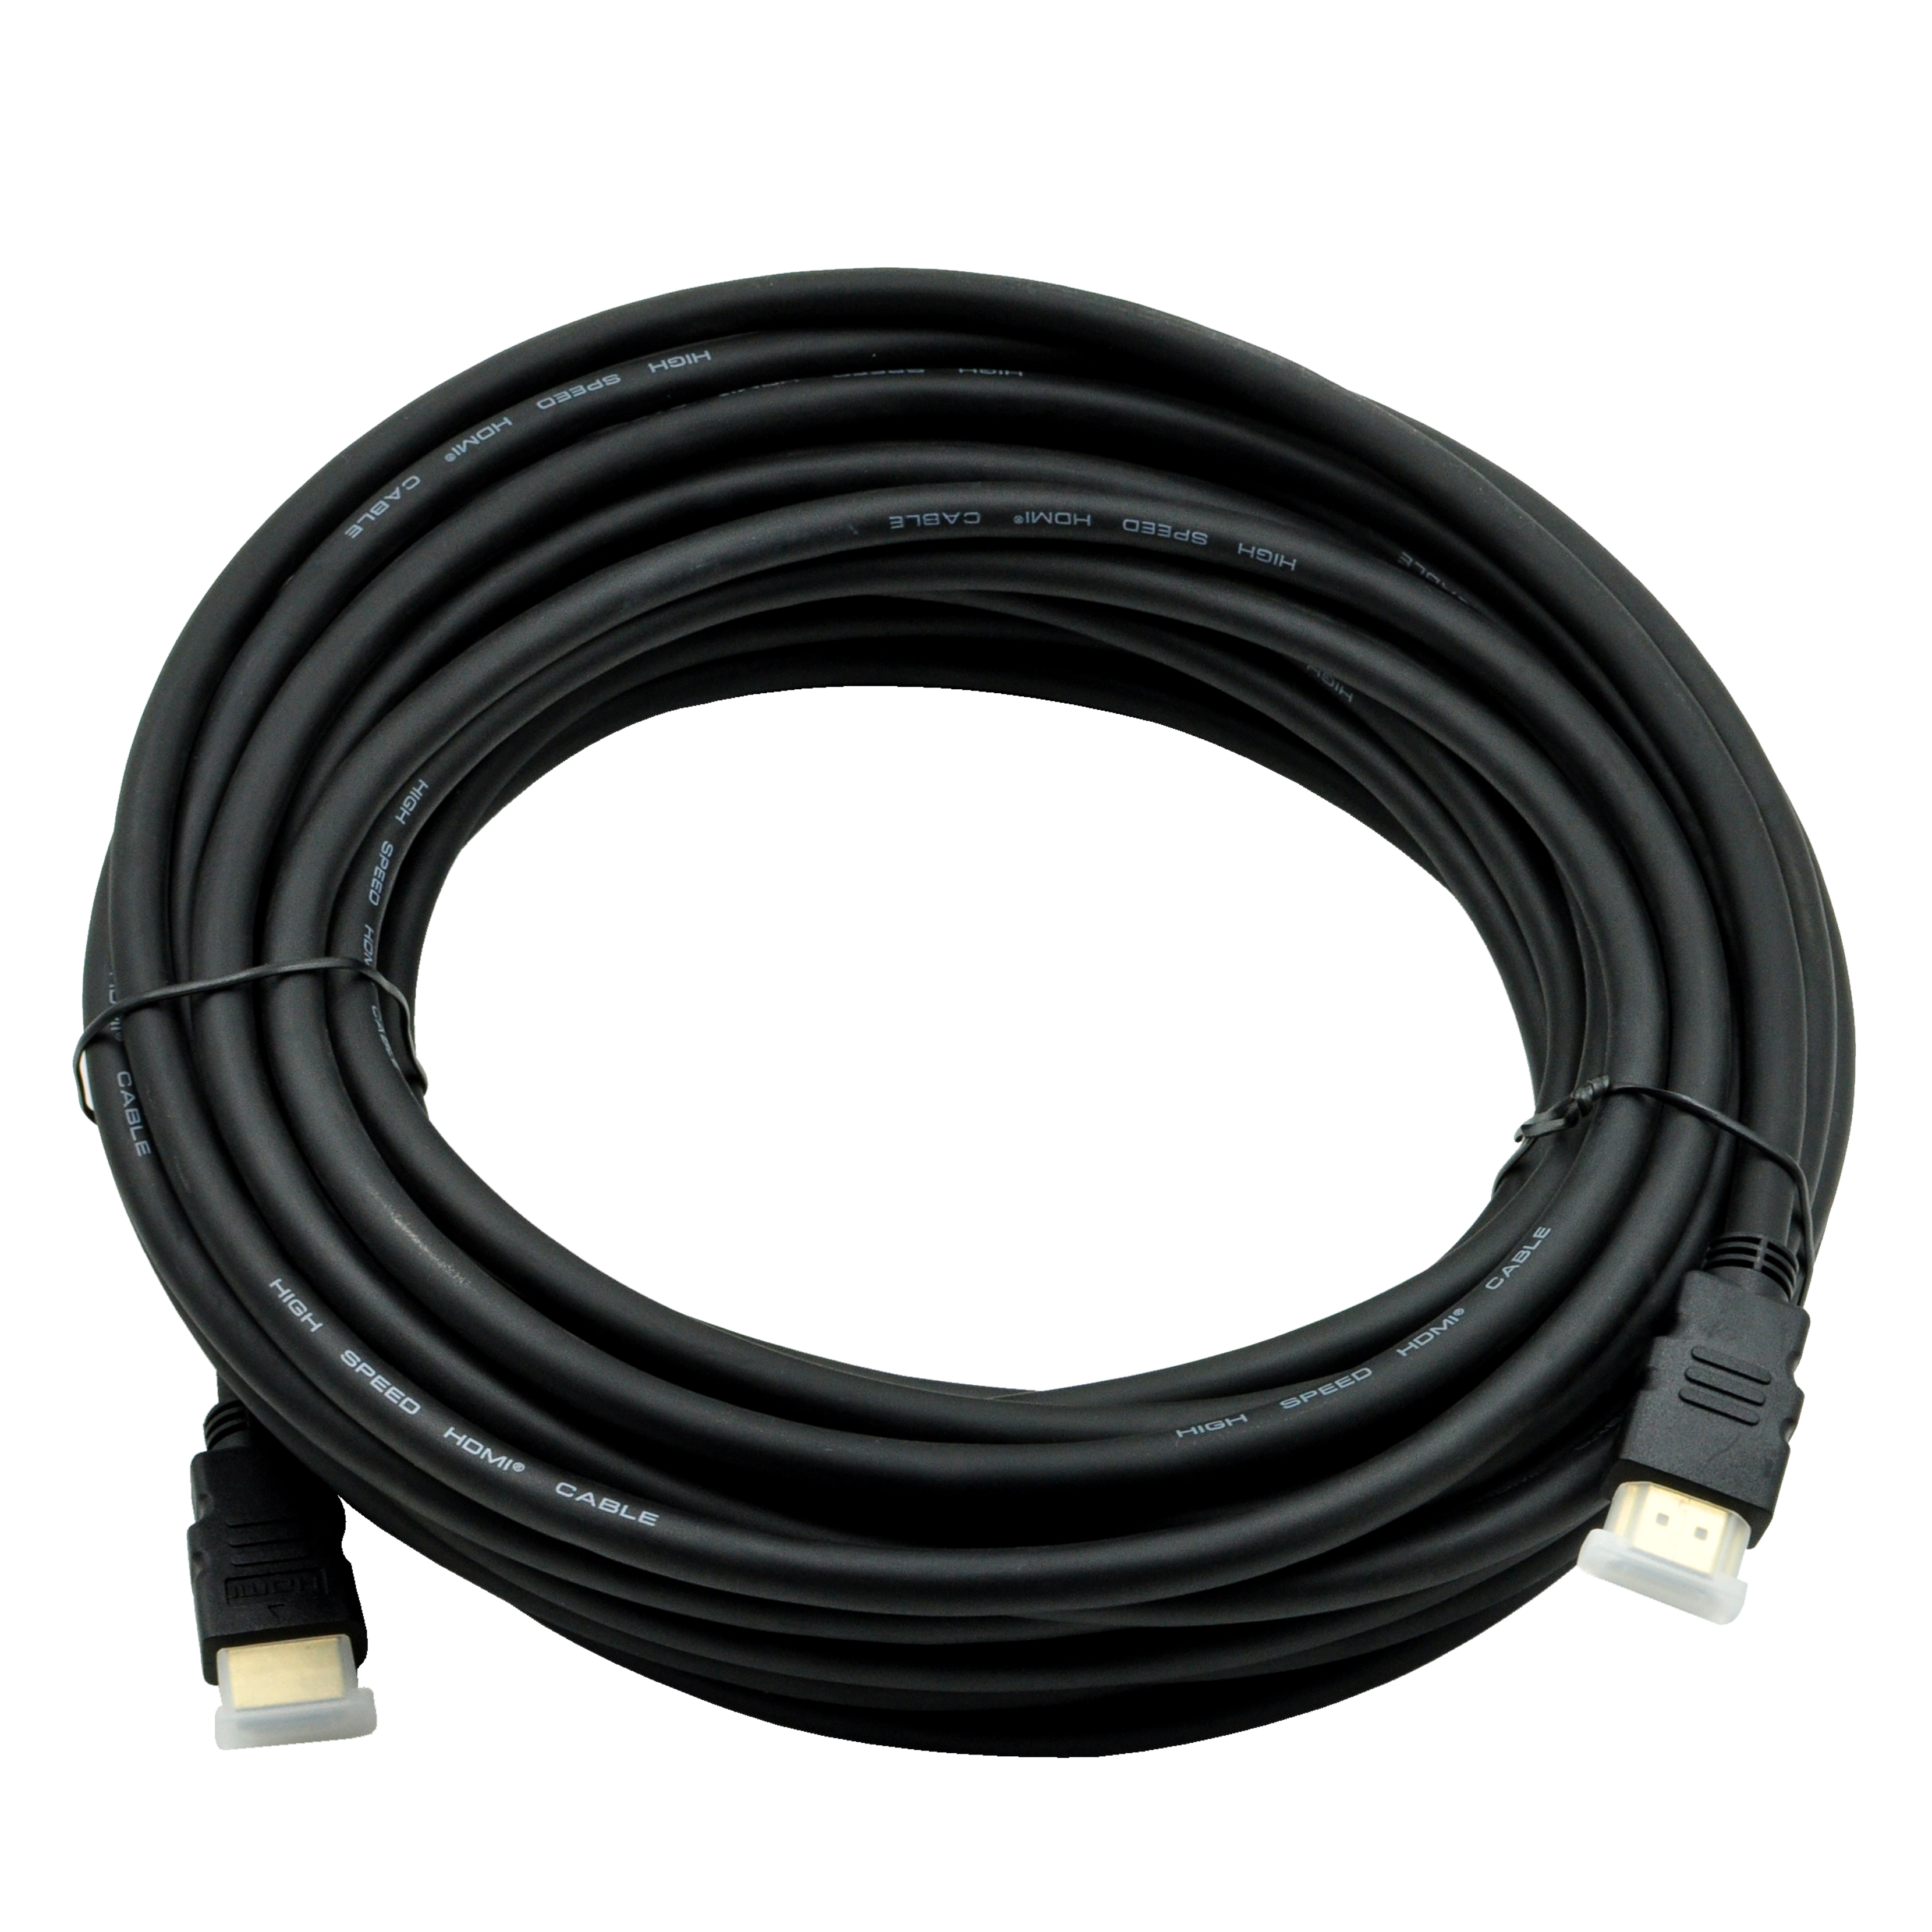 Cable Hdmi Xtech Xtc-370 7.6M Negro